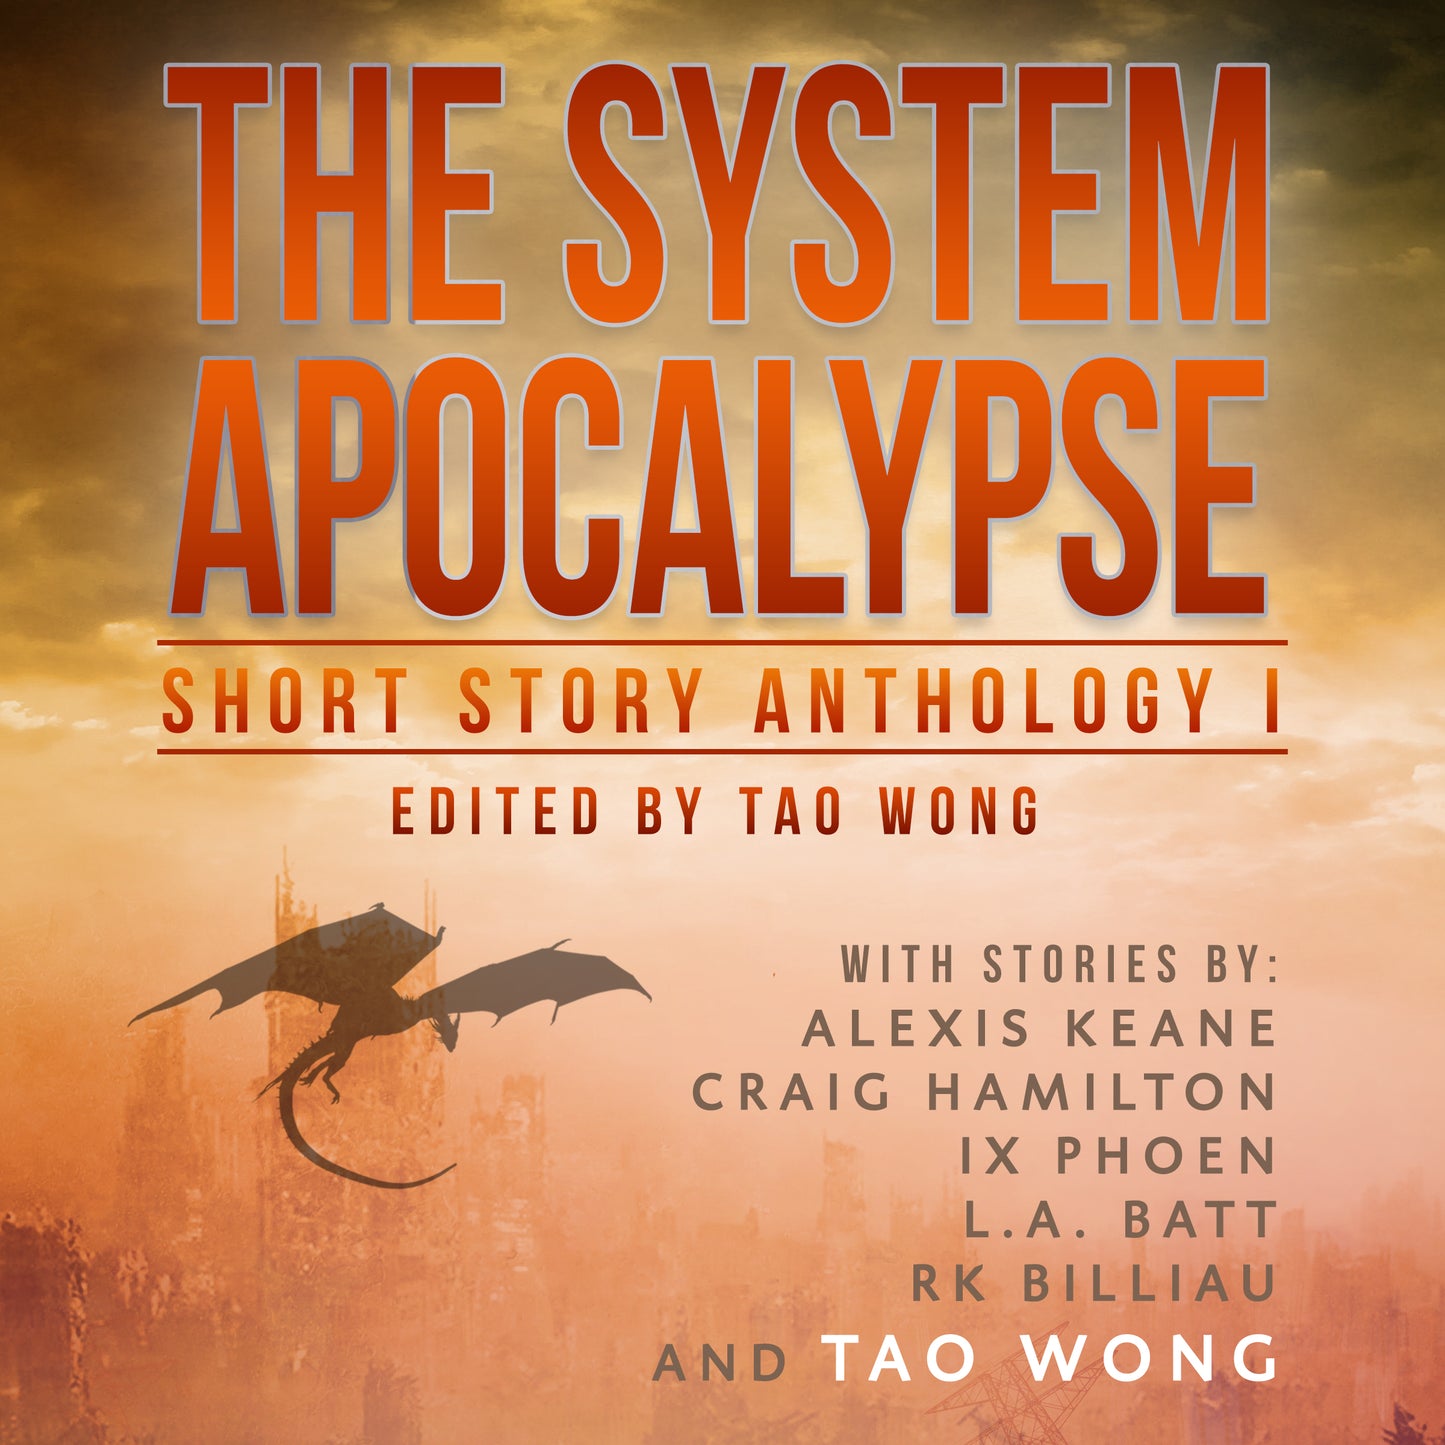 The System Apocalypse: Short Story Anthology I